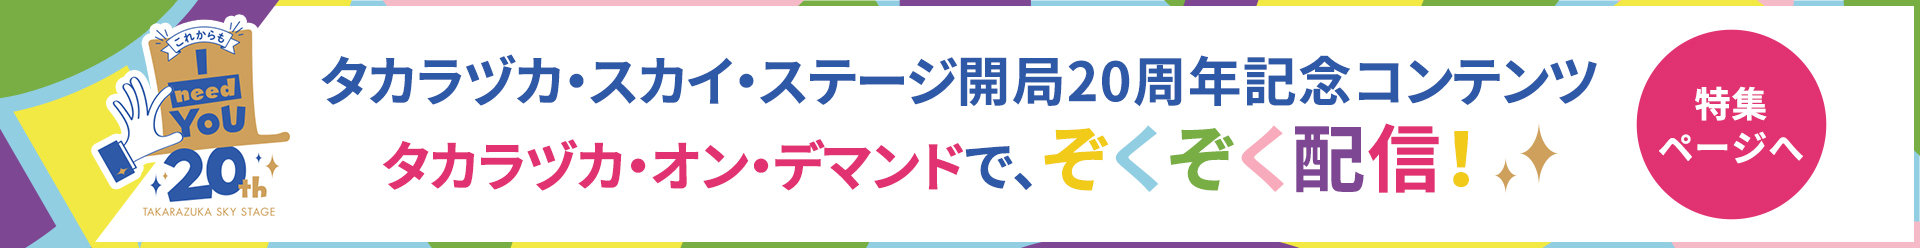 タカラヅカ・スカイ・ステージ開局20周年記念コンテンツタカラヅカ・オン・デマンドで、ぞくぞく配信！